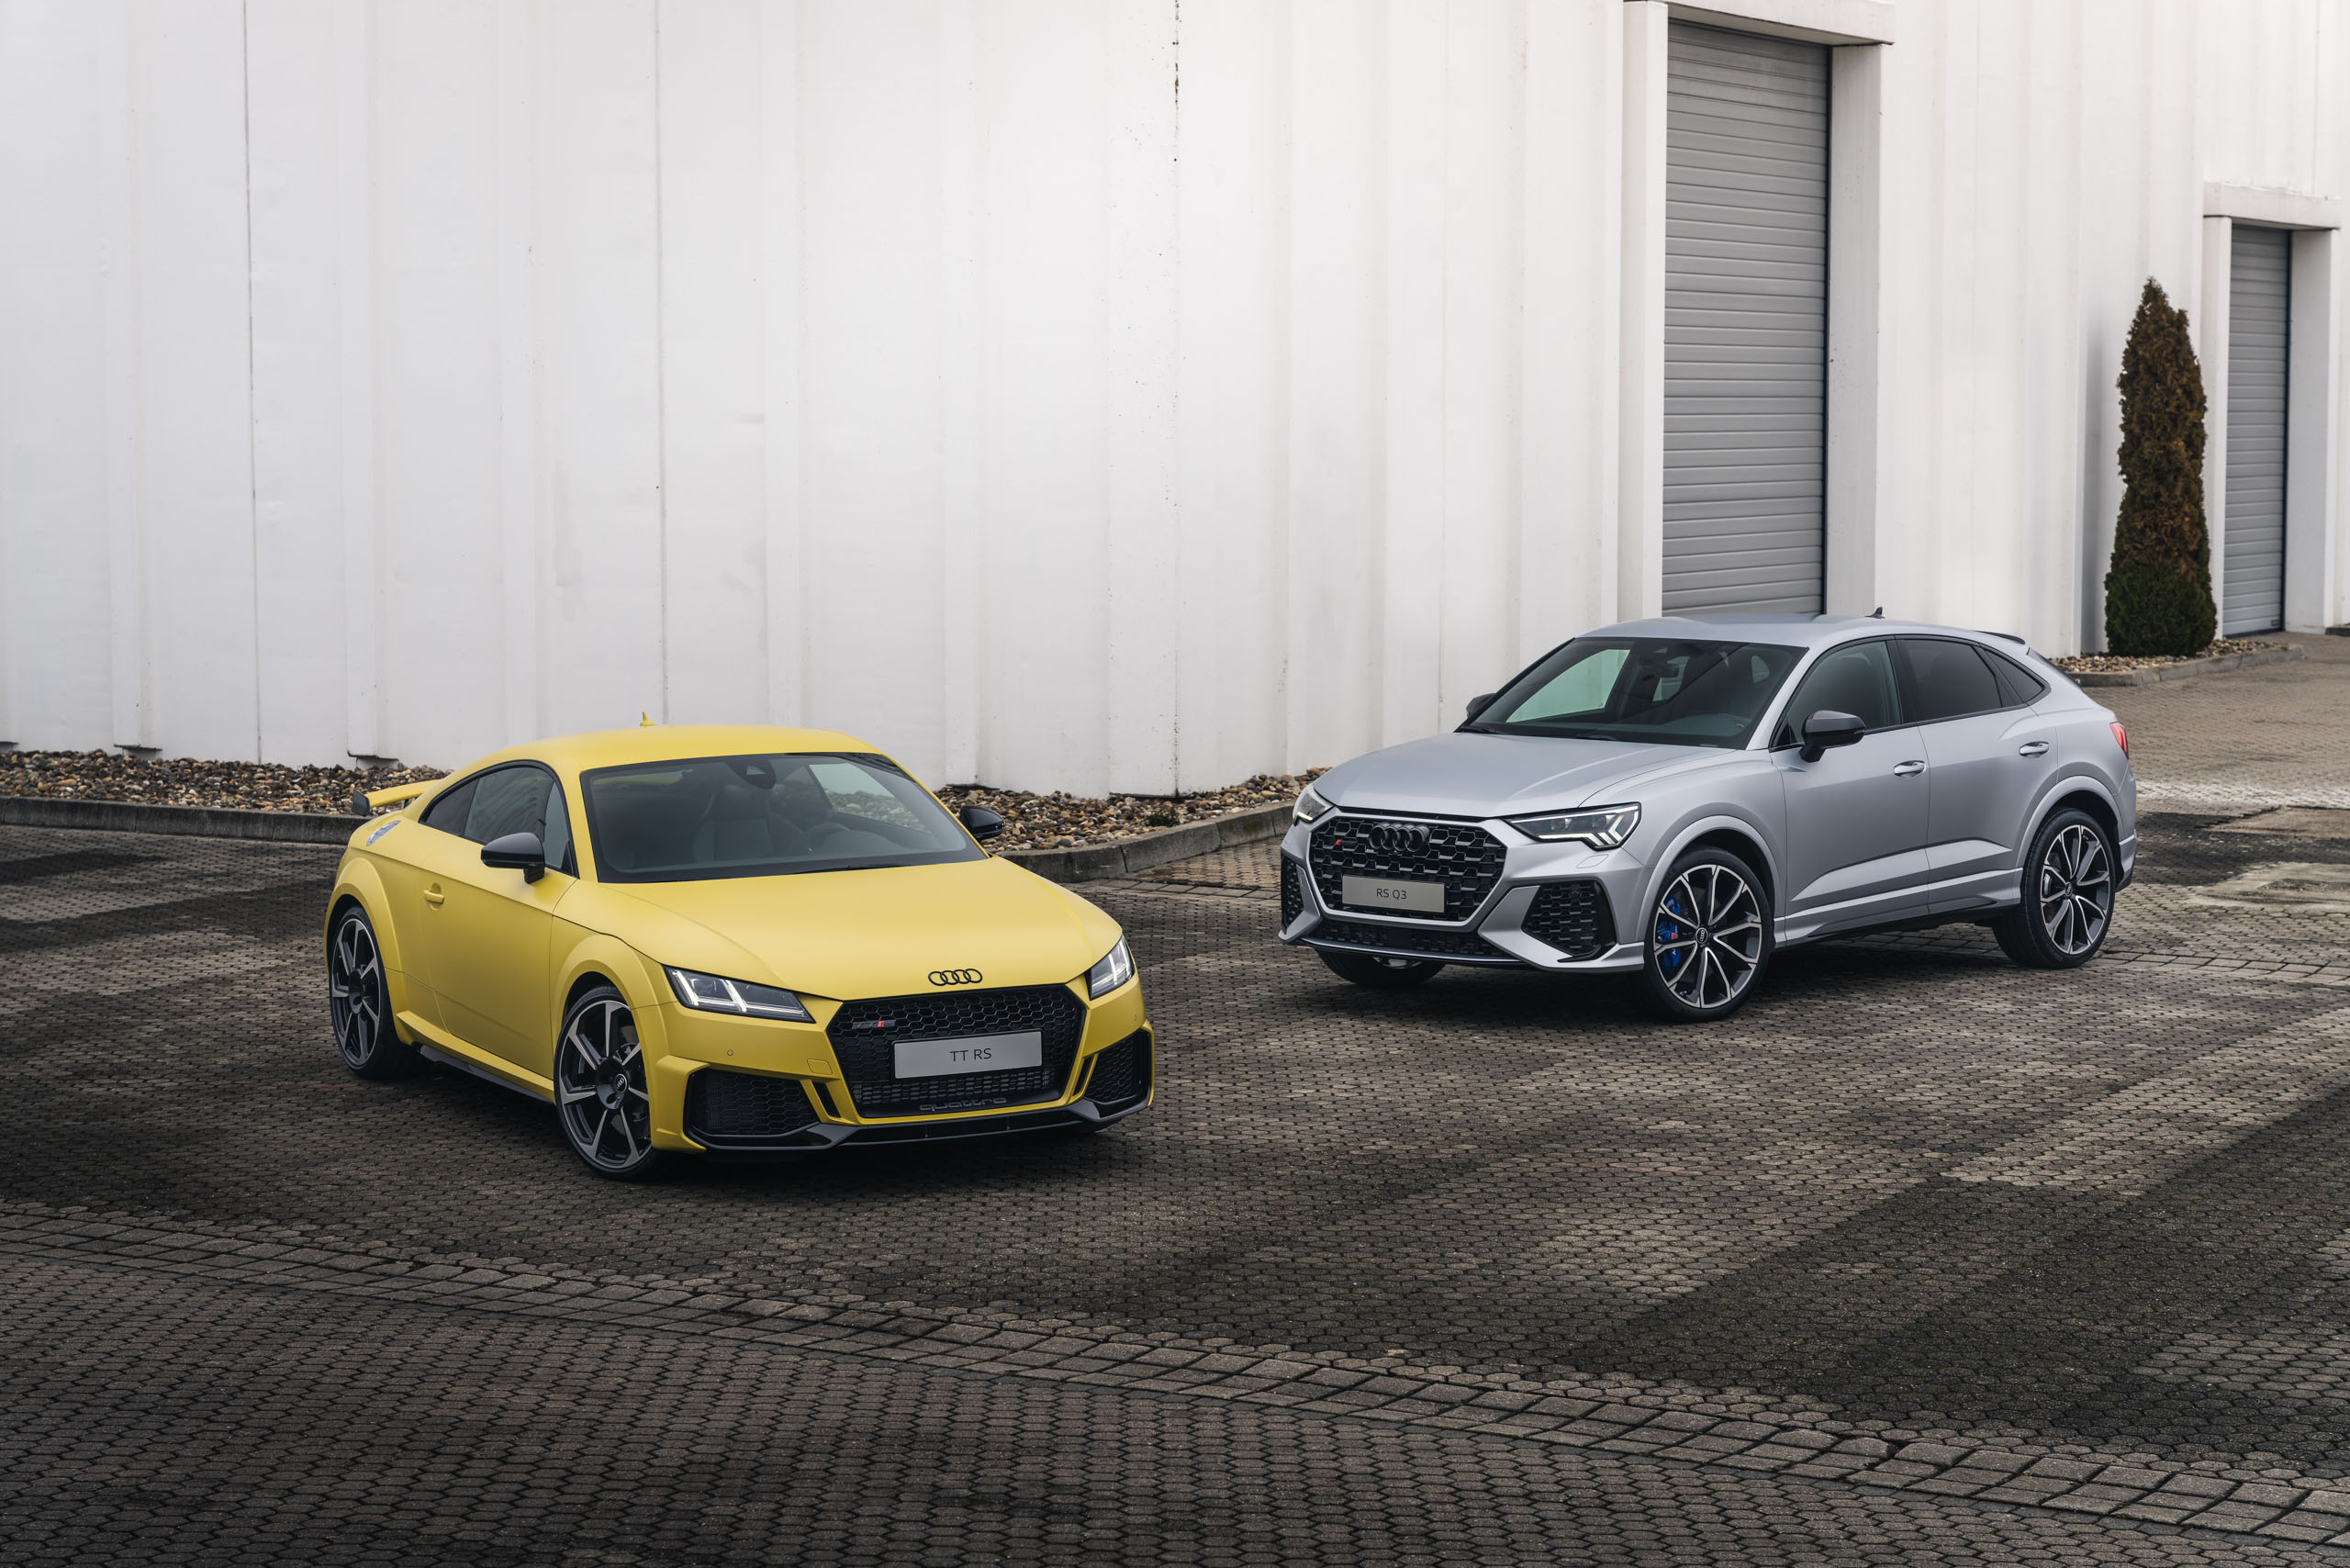 2022 Audi TT und Q3 in Matt-Lack | Fanaticar Magazin